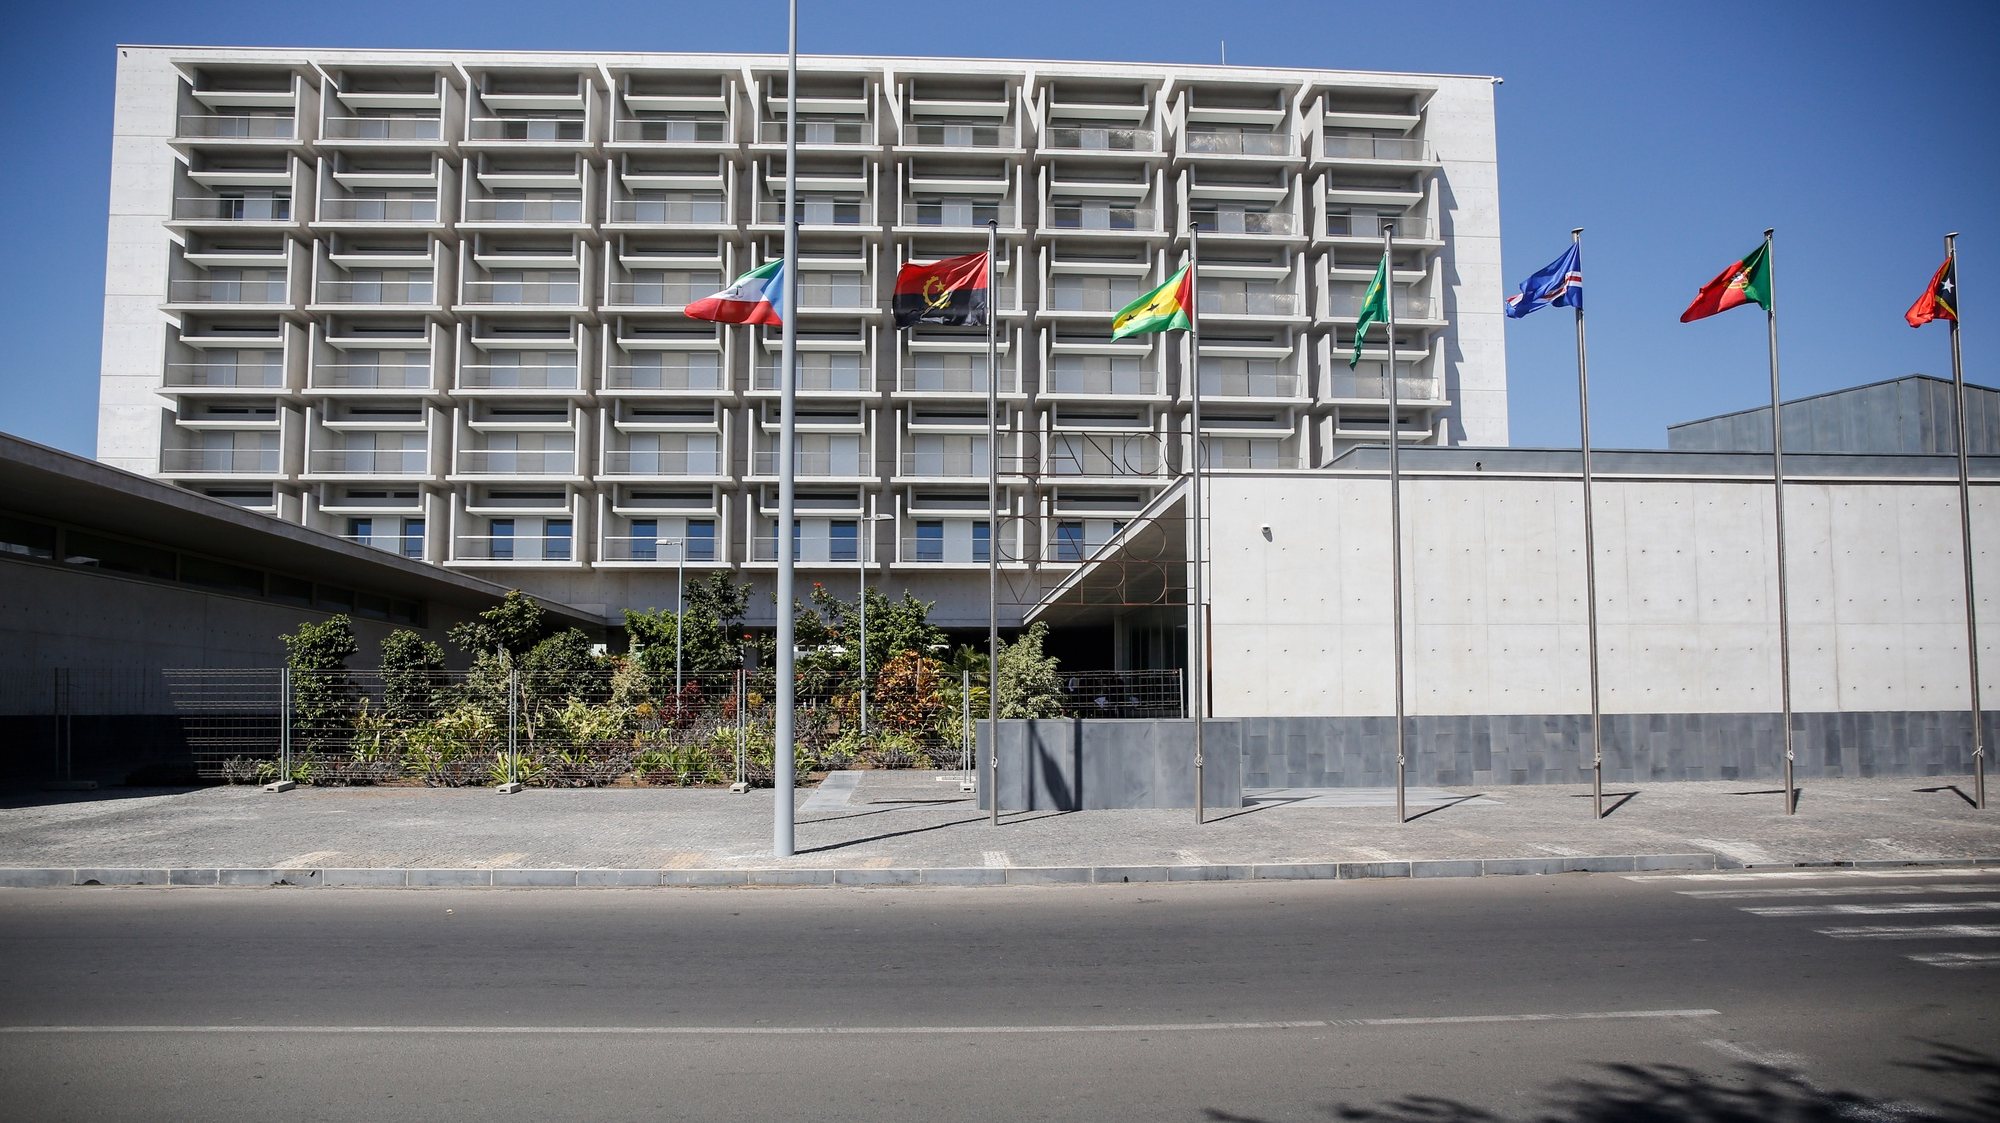 Sede do Banco de Cabo Verde (BCV) desenhada pelo arquiteto Siza Vieira e considerado o mais moderno edifício do país, Cidade da Praia, Cabo Verde, 11 de fevereiro de 2021.  FERNANDO DE PINA/LUSA